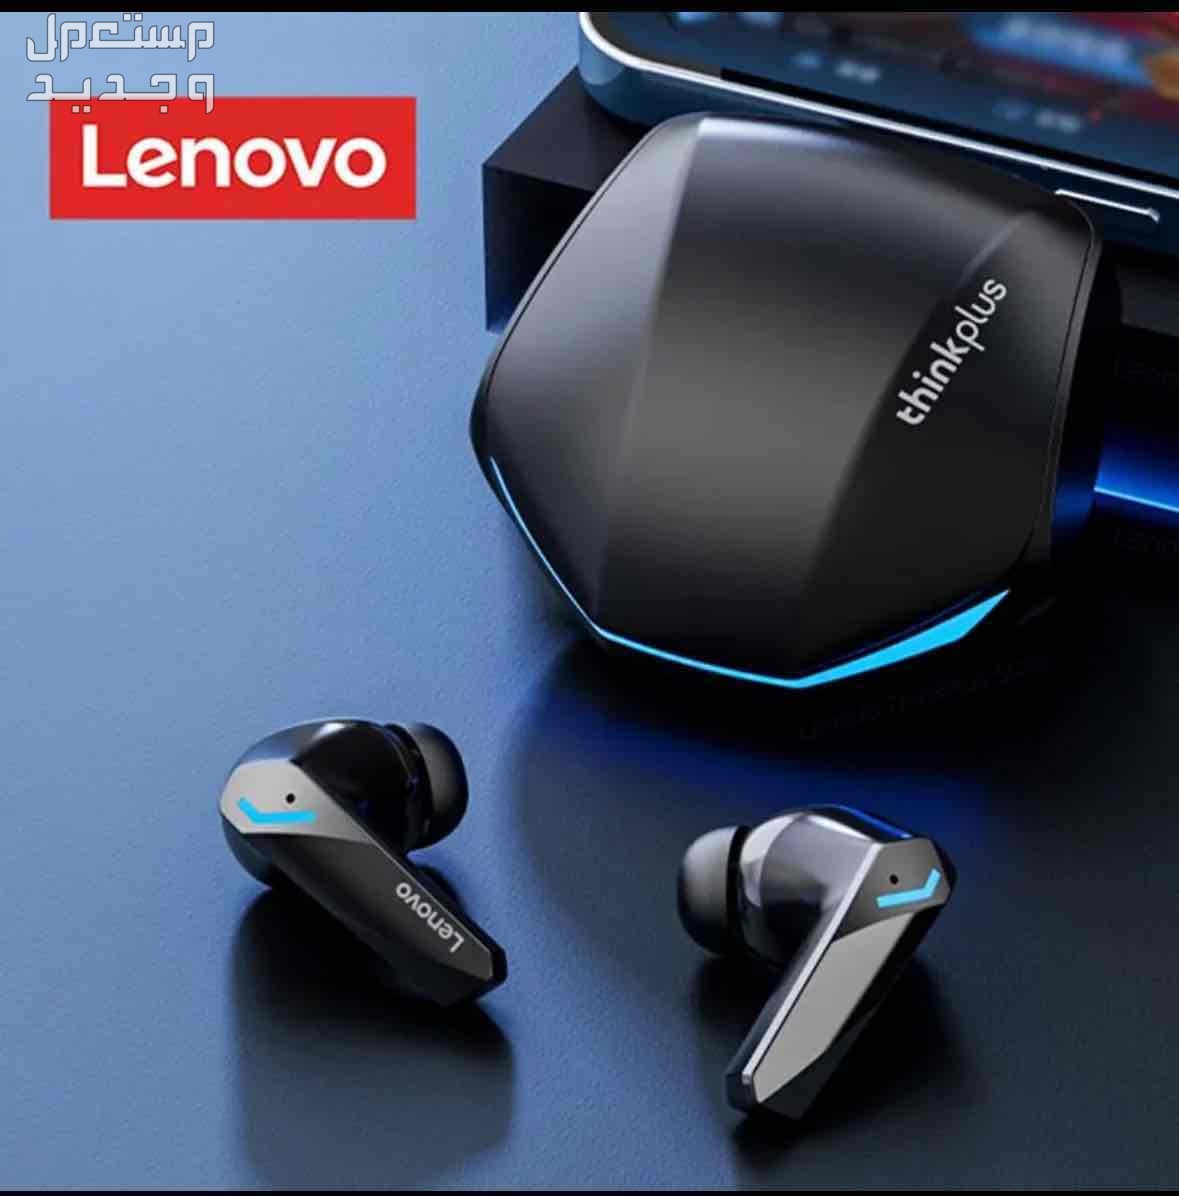 سماعات Lenovo GM2 Pro بلوتوث سماعة أذن لاسلكية داخل الأذن للألعاب بزمن استجابة منخفض سماعات موسيقى مزدوجة الوضع جديدة سماعات Lenovo GM2 Pro بلوتوث سماعة أذن لاسلكية داخل الأذن للألعاب بزمن استجابة م